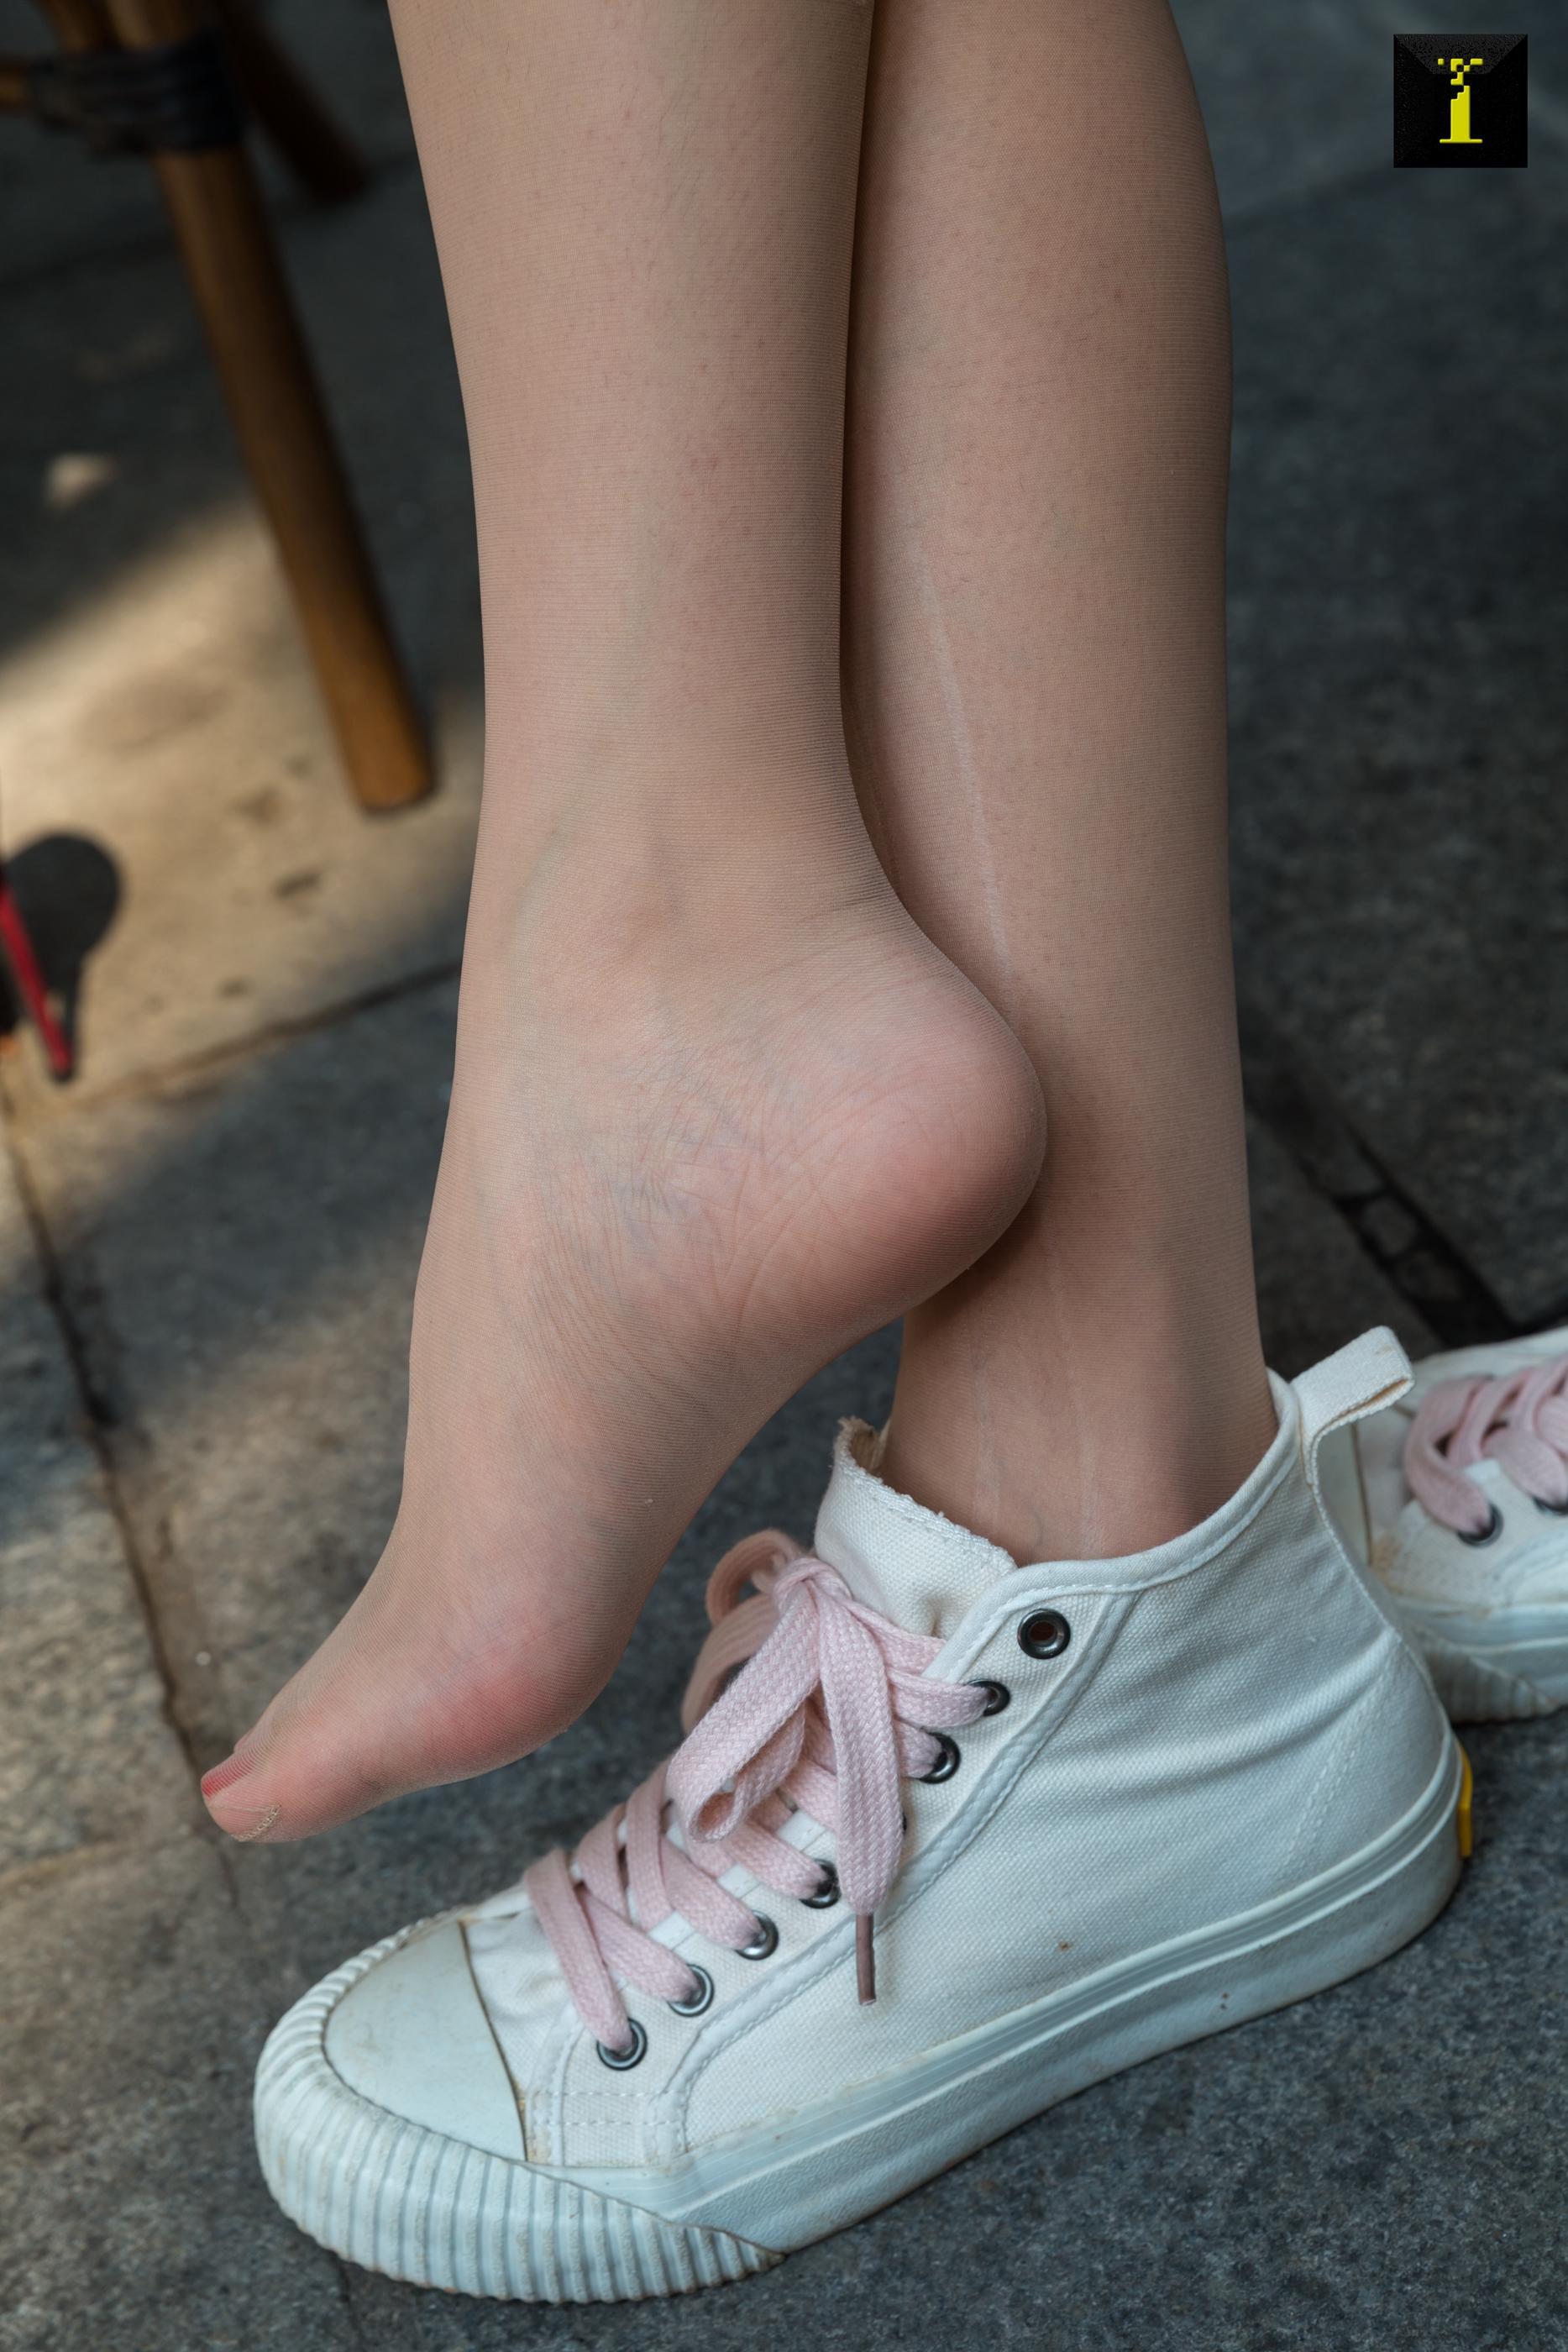 12 / 05 / 2019 sishengjia 636: crape myrtle - change into new high heels